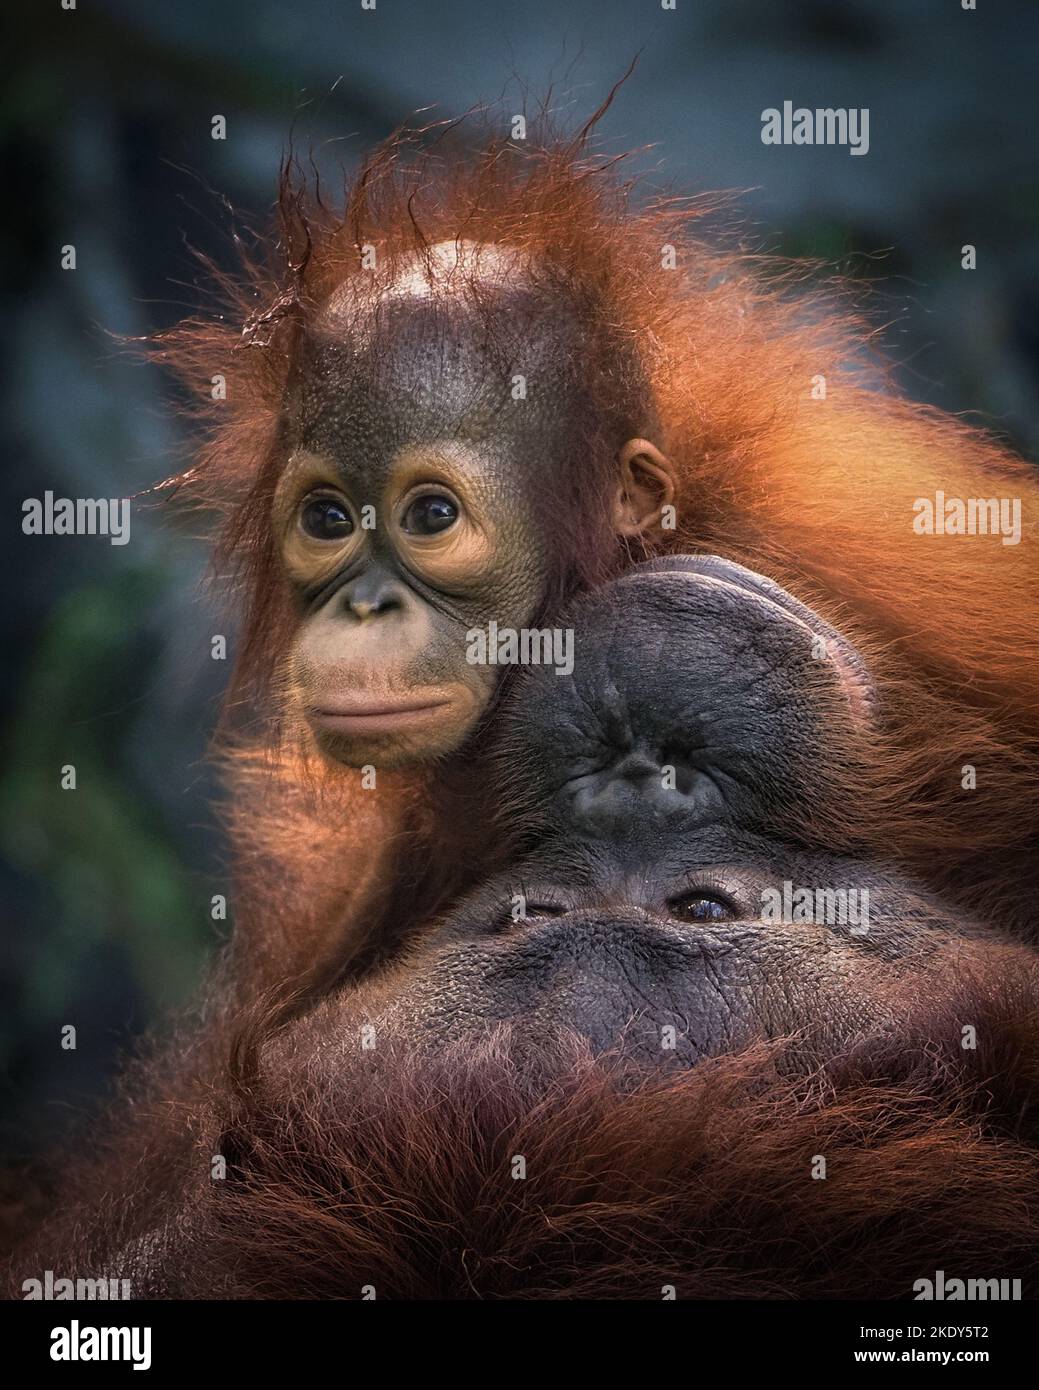 Le bébé orangutan punit maman pendant qu'il joue. Indonésie : CES IMAGES ADORABLES montrent un bébé orangé partageant avec amour un baiser avec sa mère. Orangutans gi Banque D'Images